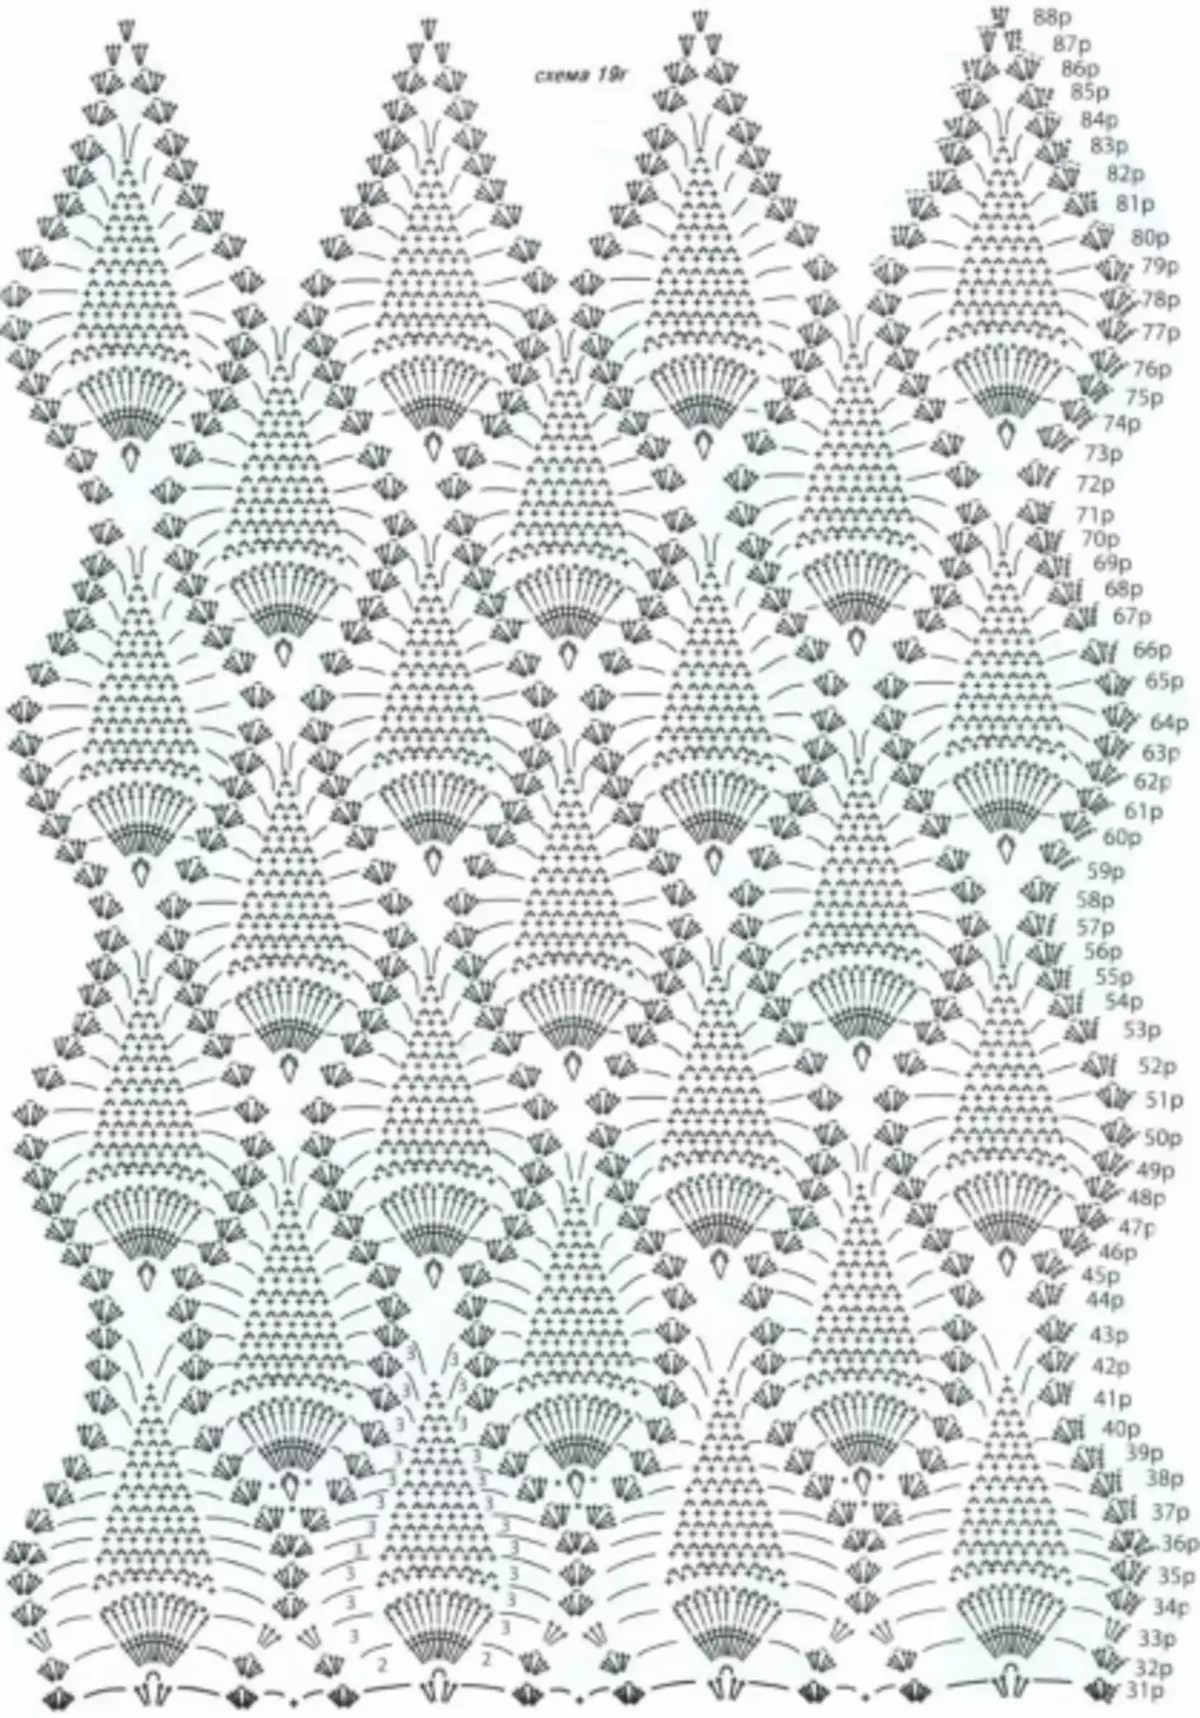 Open Forward Crochet Muster fir Summerblouse: Schema mat Fotoen a Video